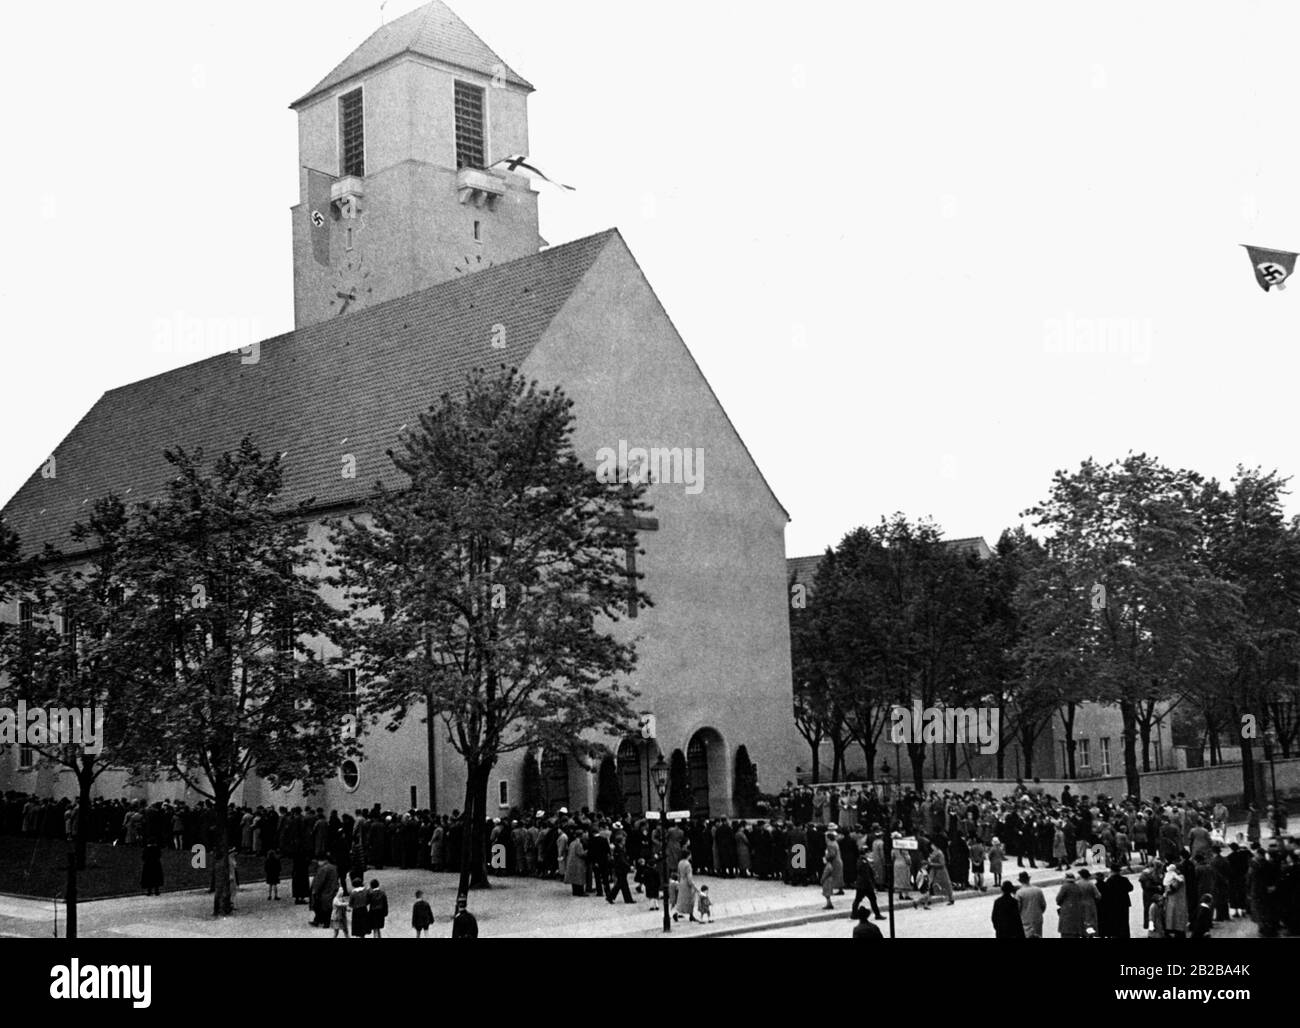 Una grande folla attende davanti alla Lindenkirche di Berlino-Wilmersdorf per l'inizio della consacrazione del servizio divino il 06.01.1936. Alla torre della chiesa è appesa una bandiera di Swastika. Foto Stock